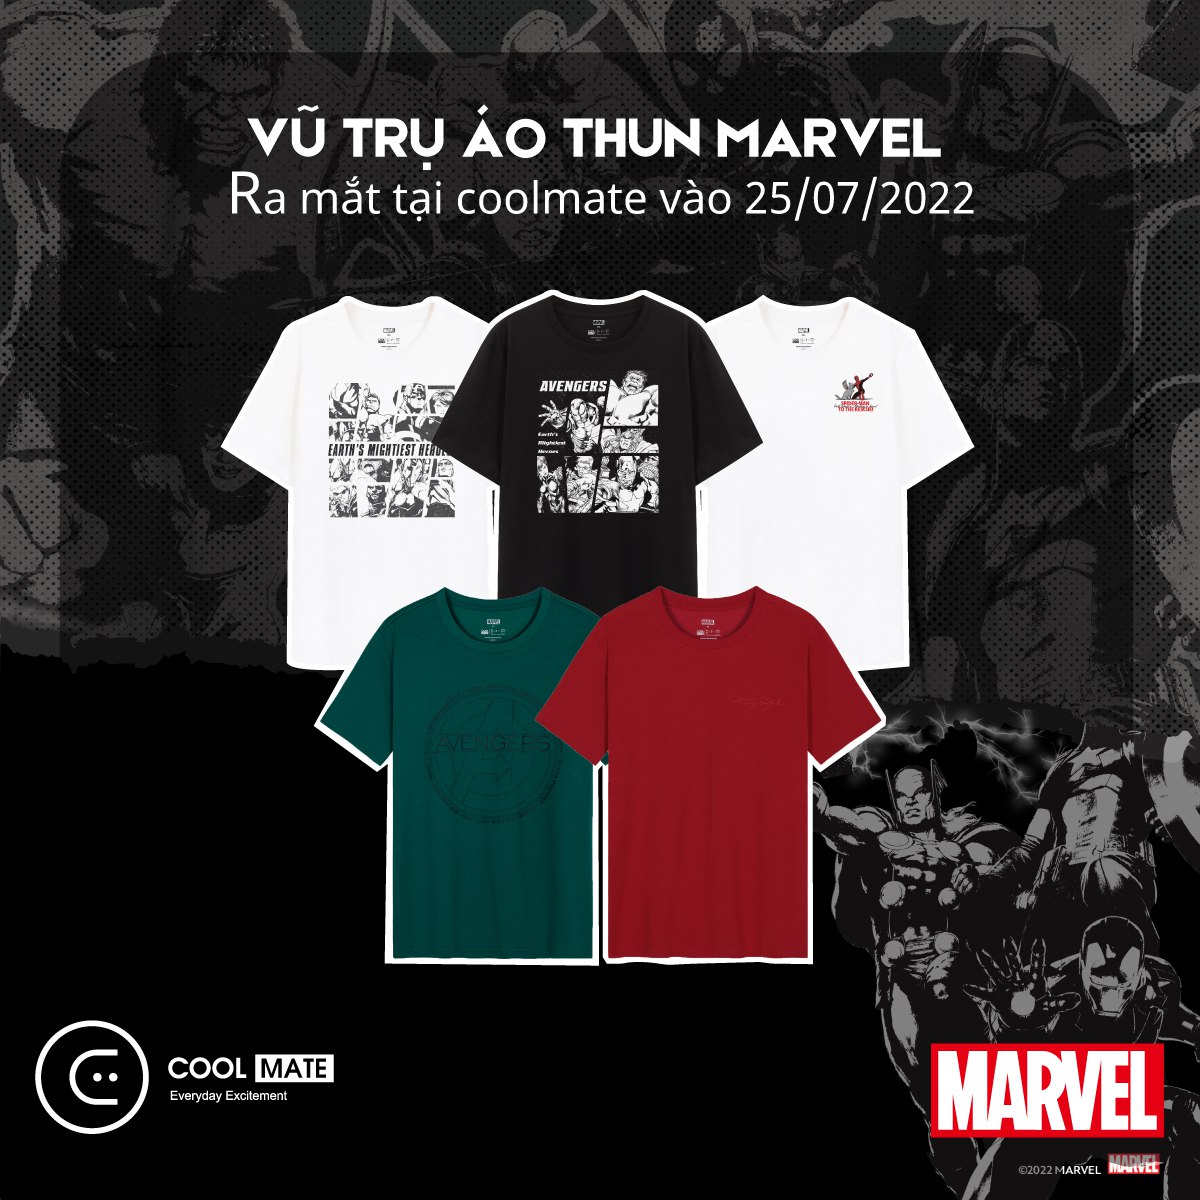 Coolmate hợp tác với The Walt Disney Việt Nam ra mắt Vũ trụ áo thun Marvel - Ảnh 2.